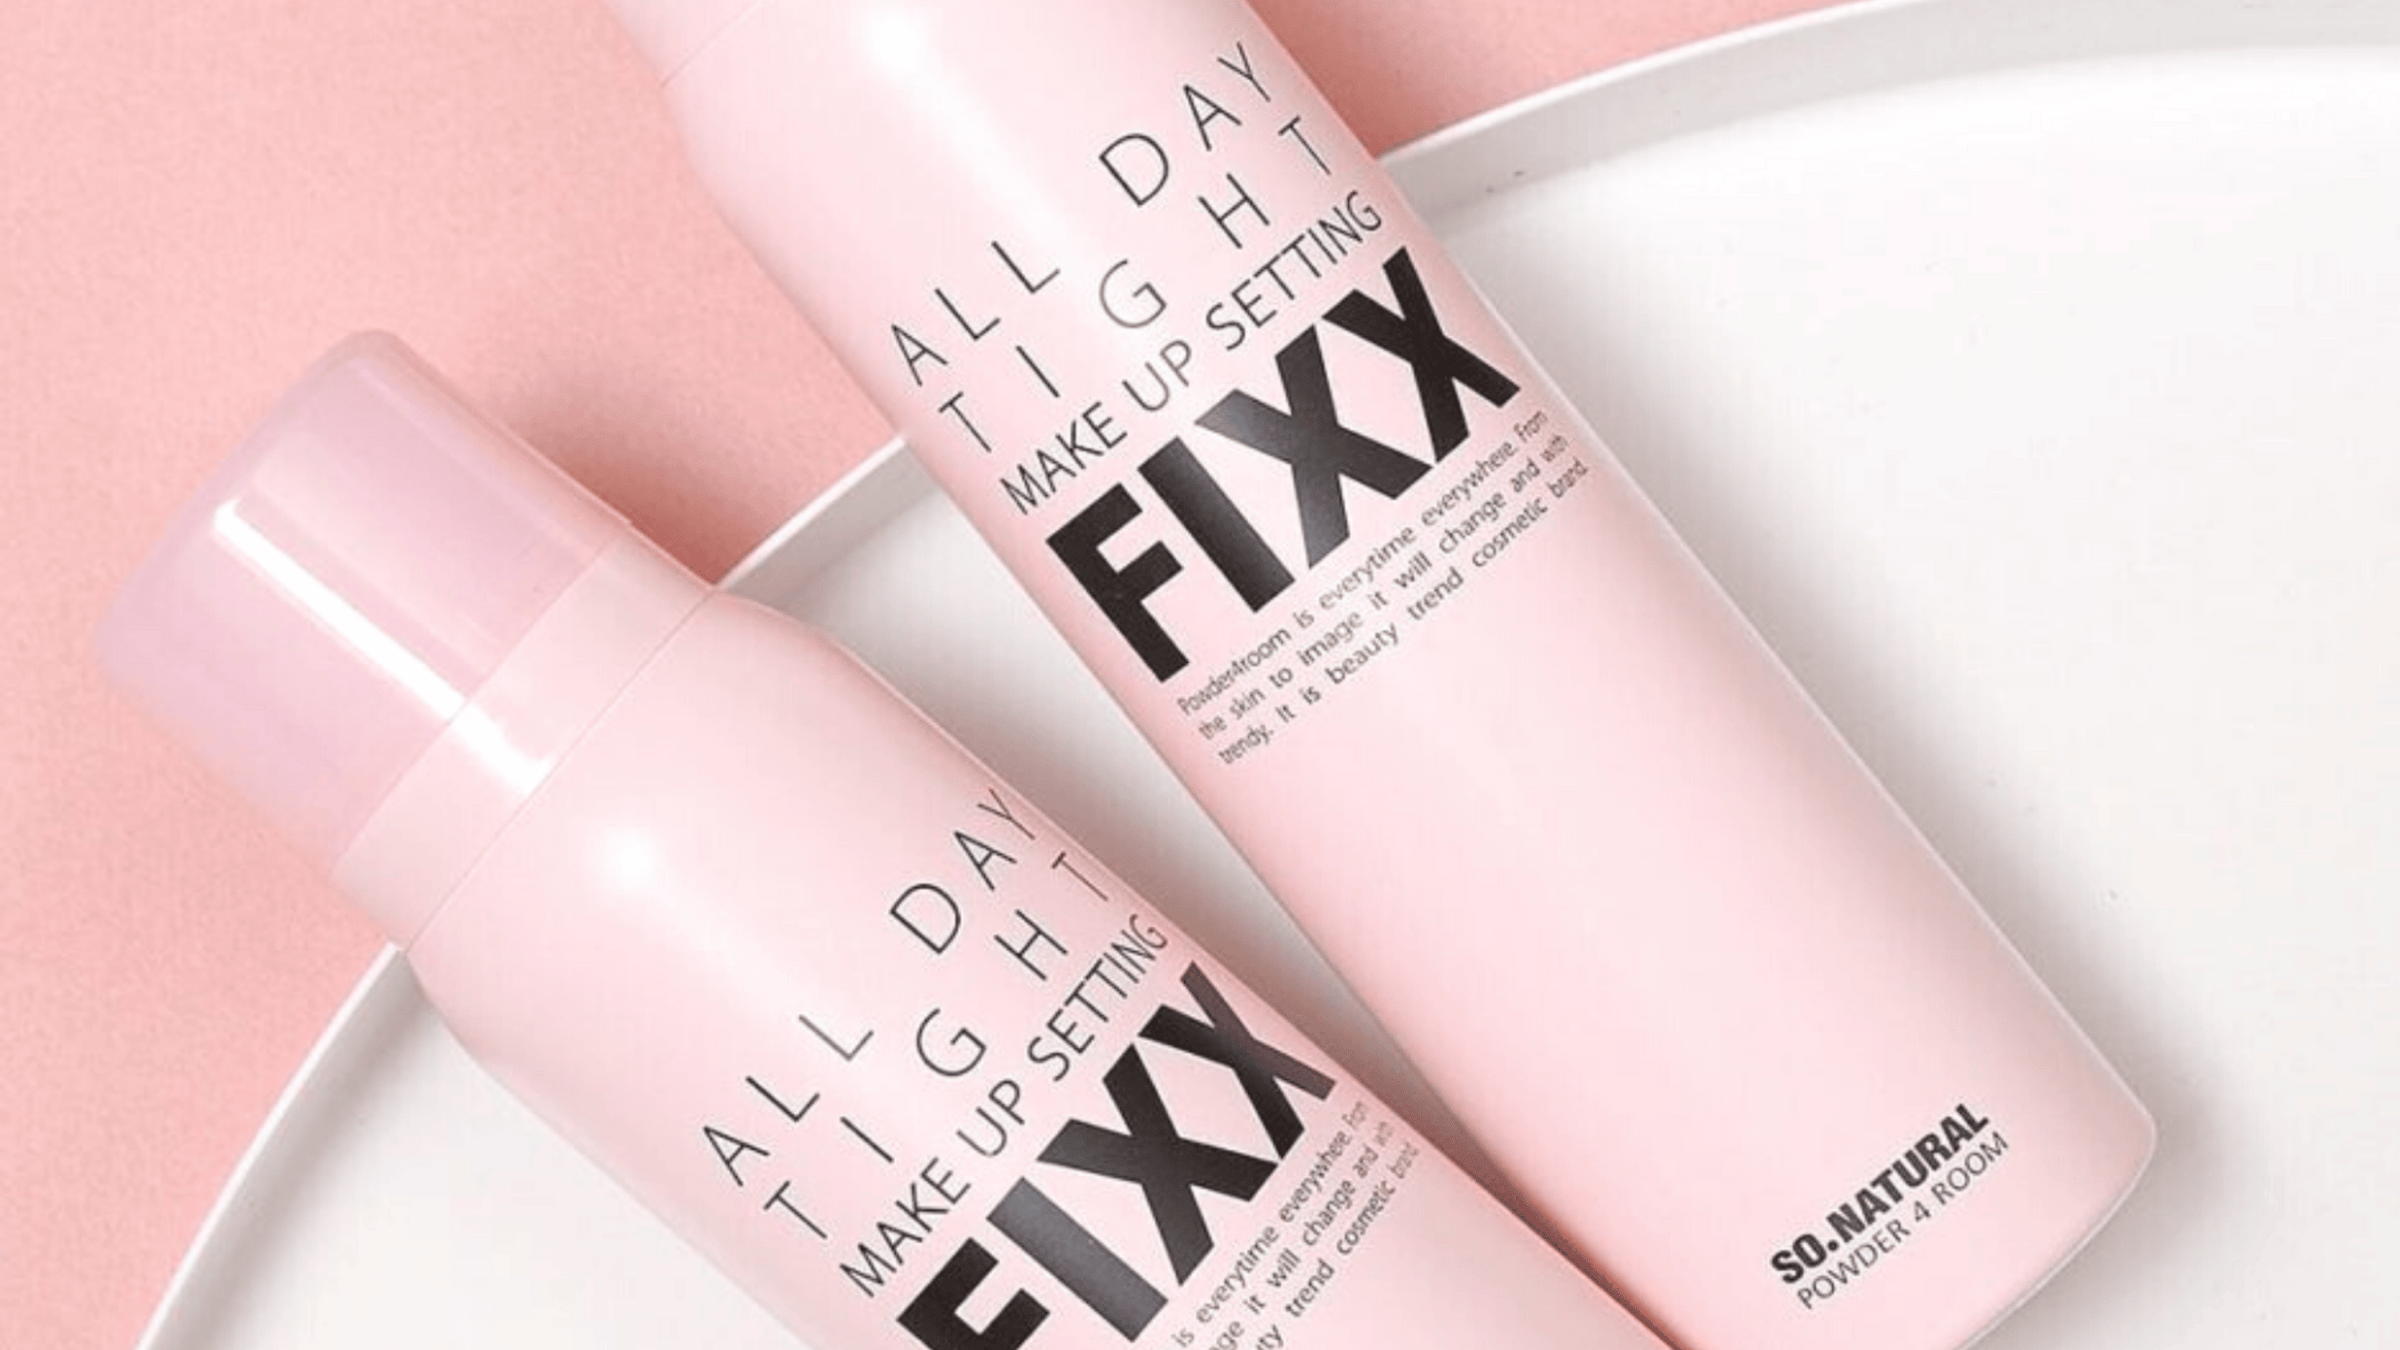 Bilden visar två flaskor av SO.NATURALs "All Day Tight Make Up Setting FIXX". Det är en setting-spray som syftar till att hålla sminket på plats hela dagen, presenterad i en attraktiv rosa förpackning.